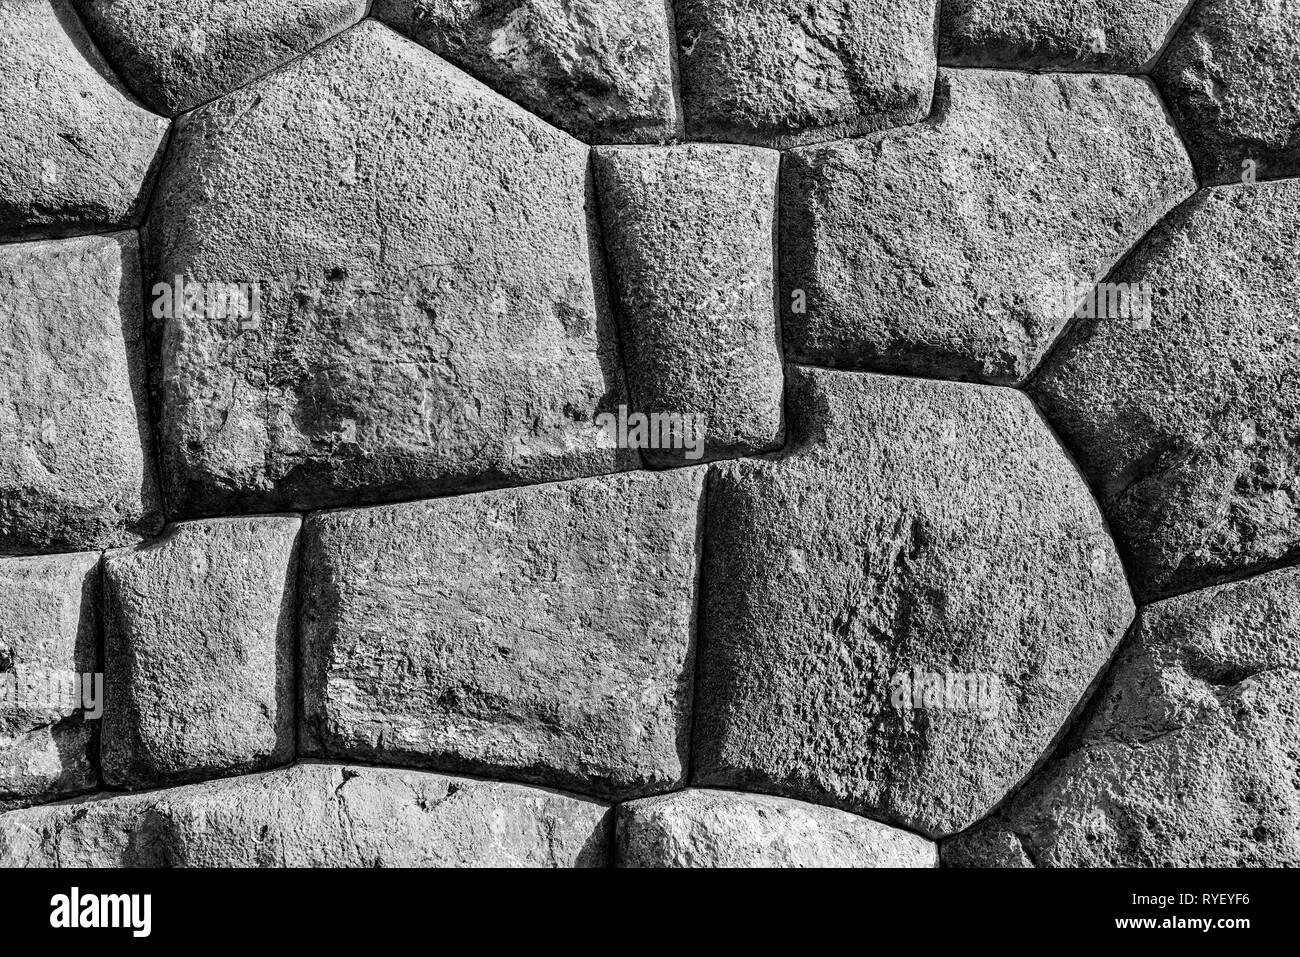 Fotografia in bianco e nero dei grandi blocchi di granito utilizzato nella costruzione della fortezza Inca di Sacsayhuaman, città di Cusco, Perù. Foto Stock